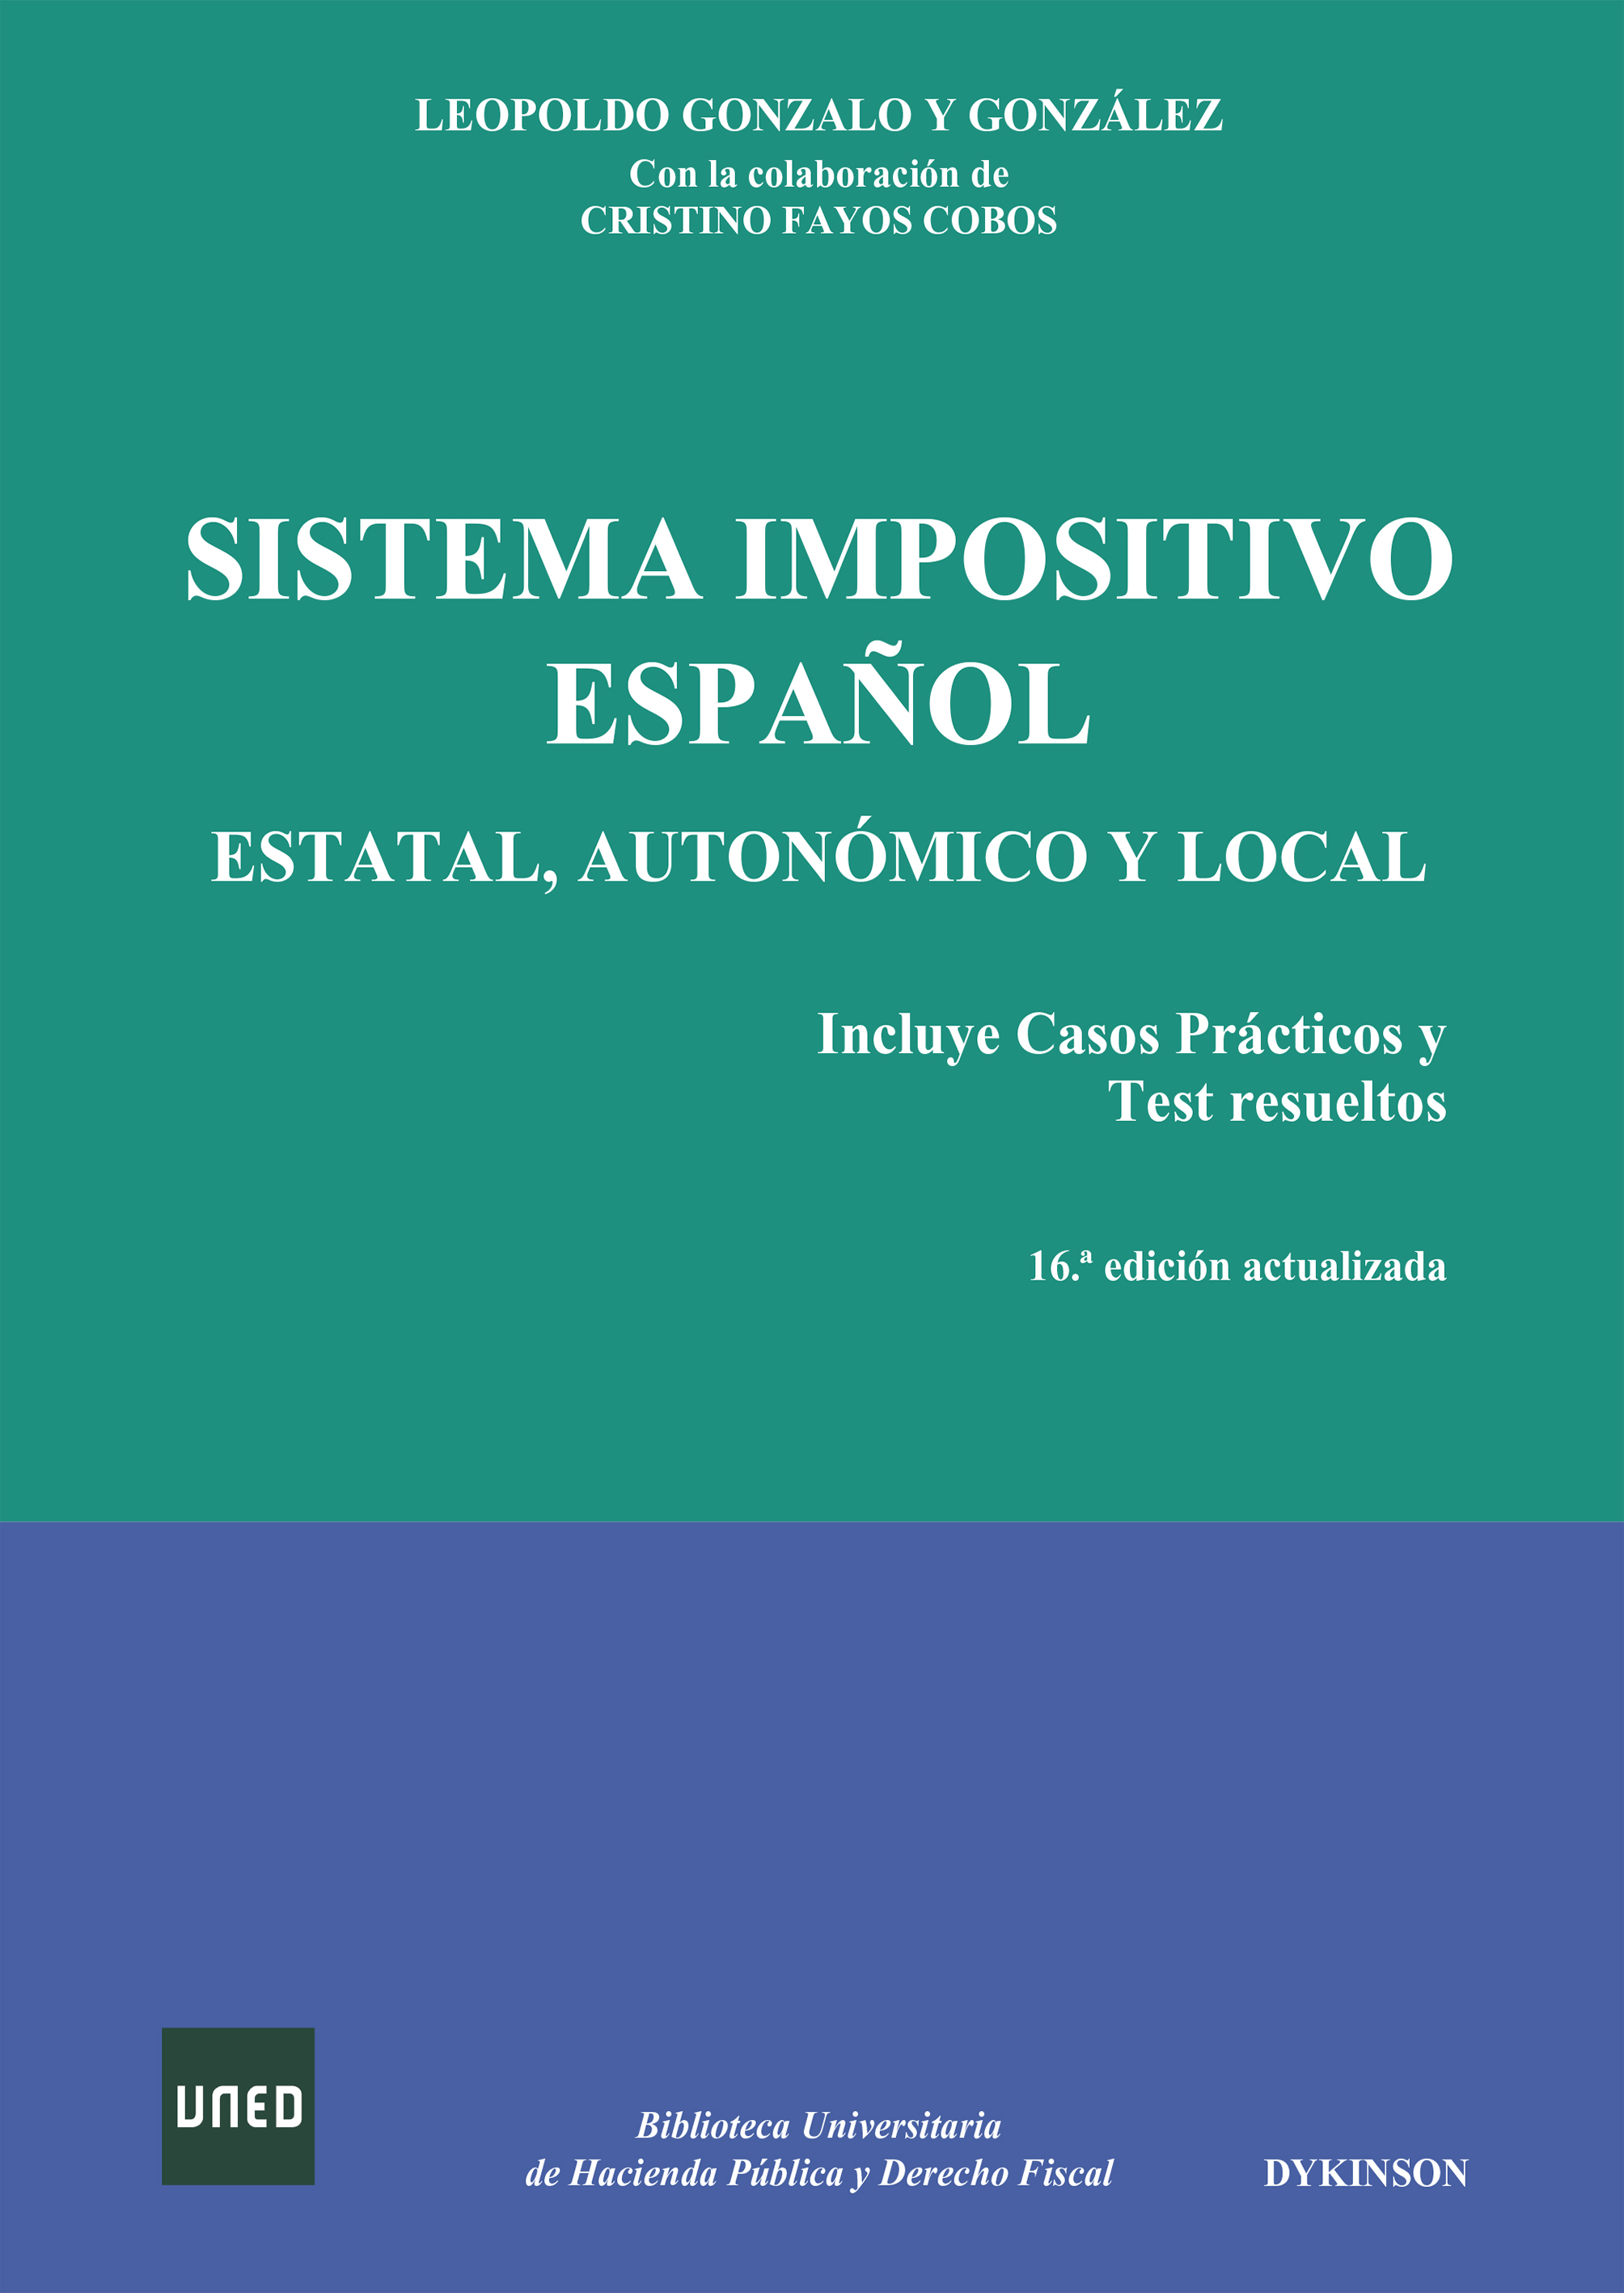 Sistema impositivo español. Estatal, autonómico y local - Fayos Cobos, Cristino. Gonzalo y González, Leopoldo